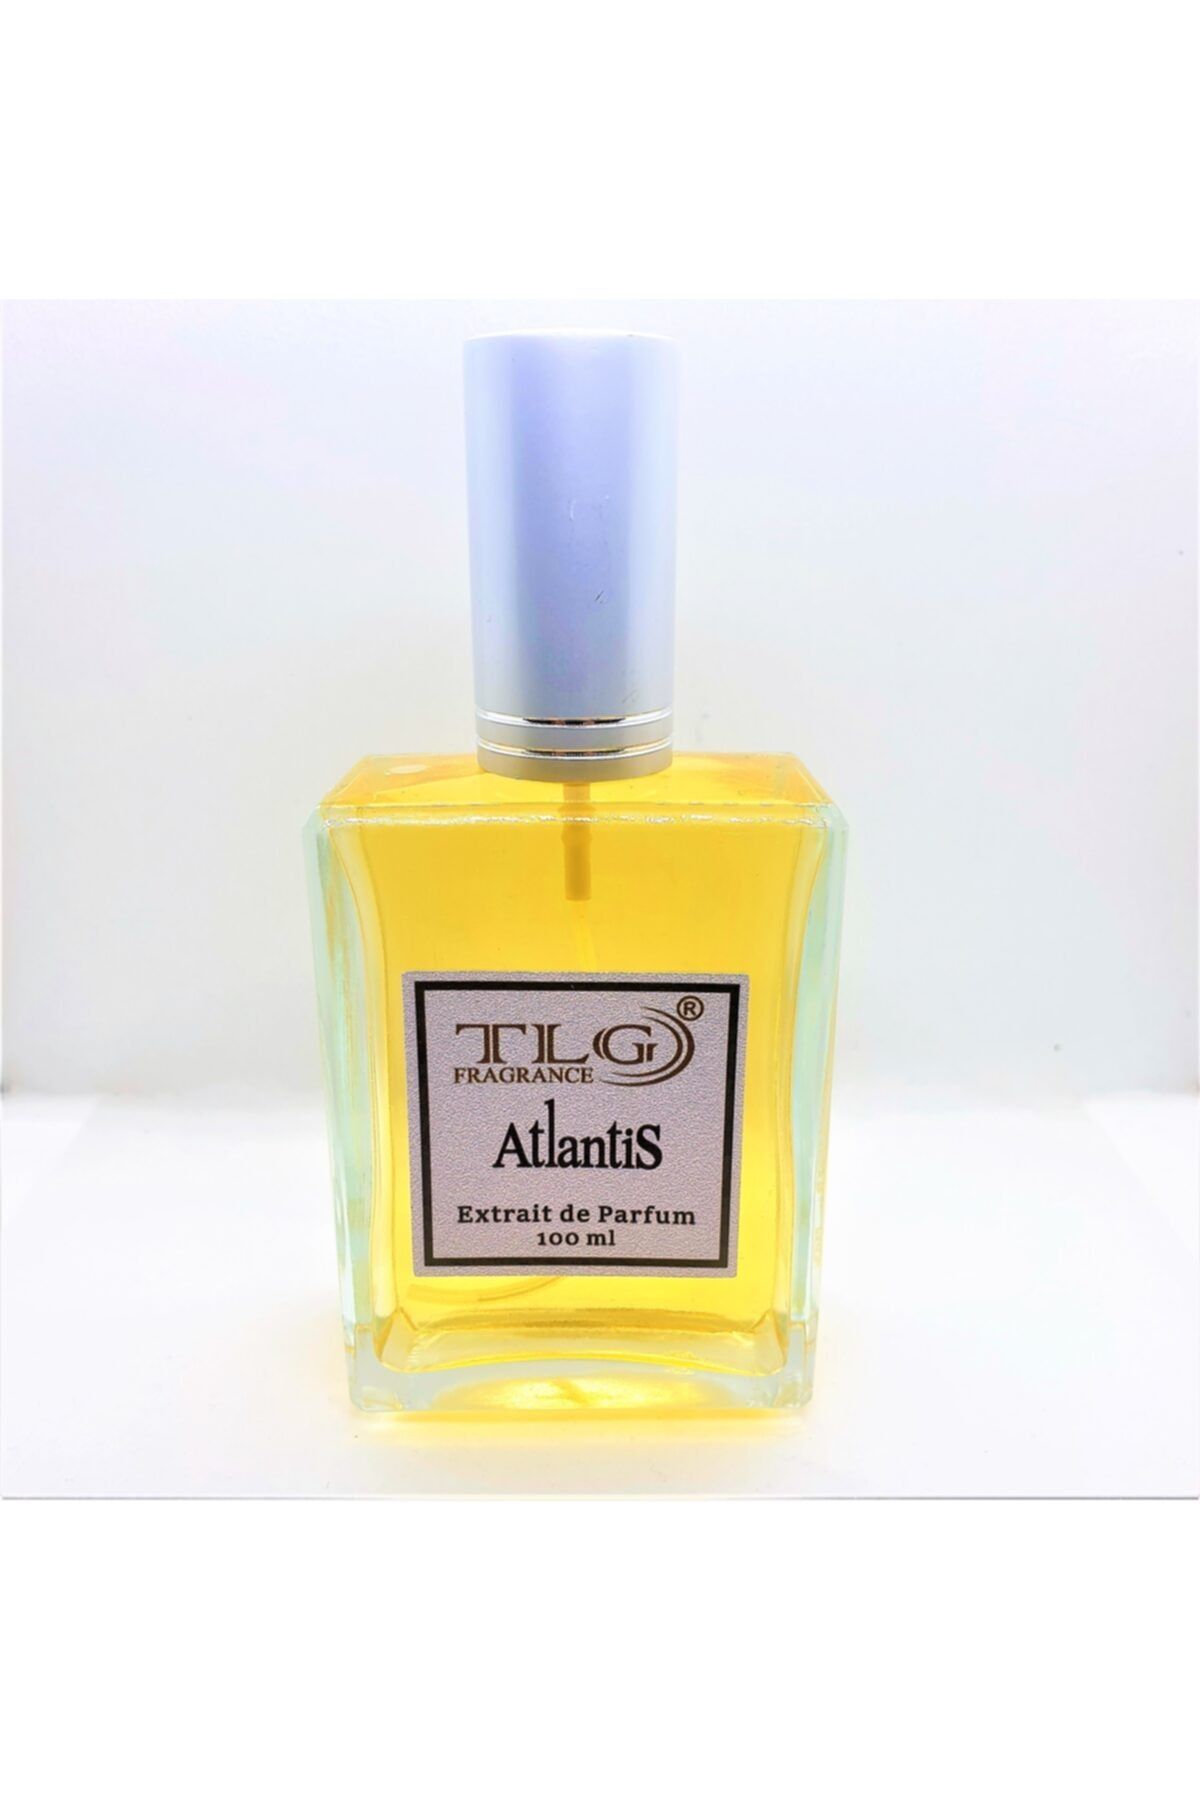 TLG Kozmetik Tlg Atlantis Extraıt De Parfum, 100 Ml (armn She)